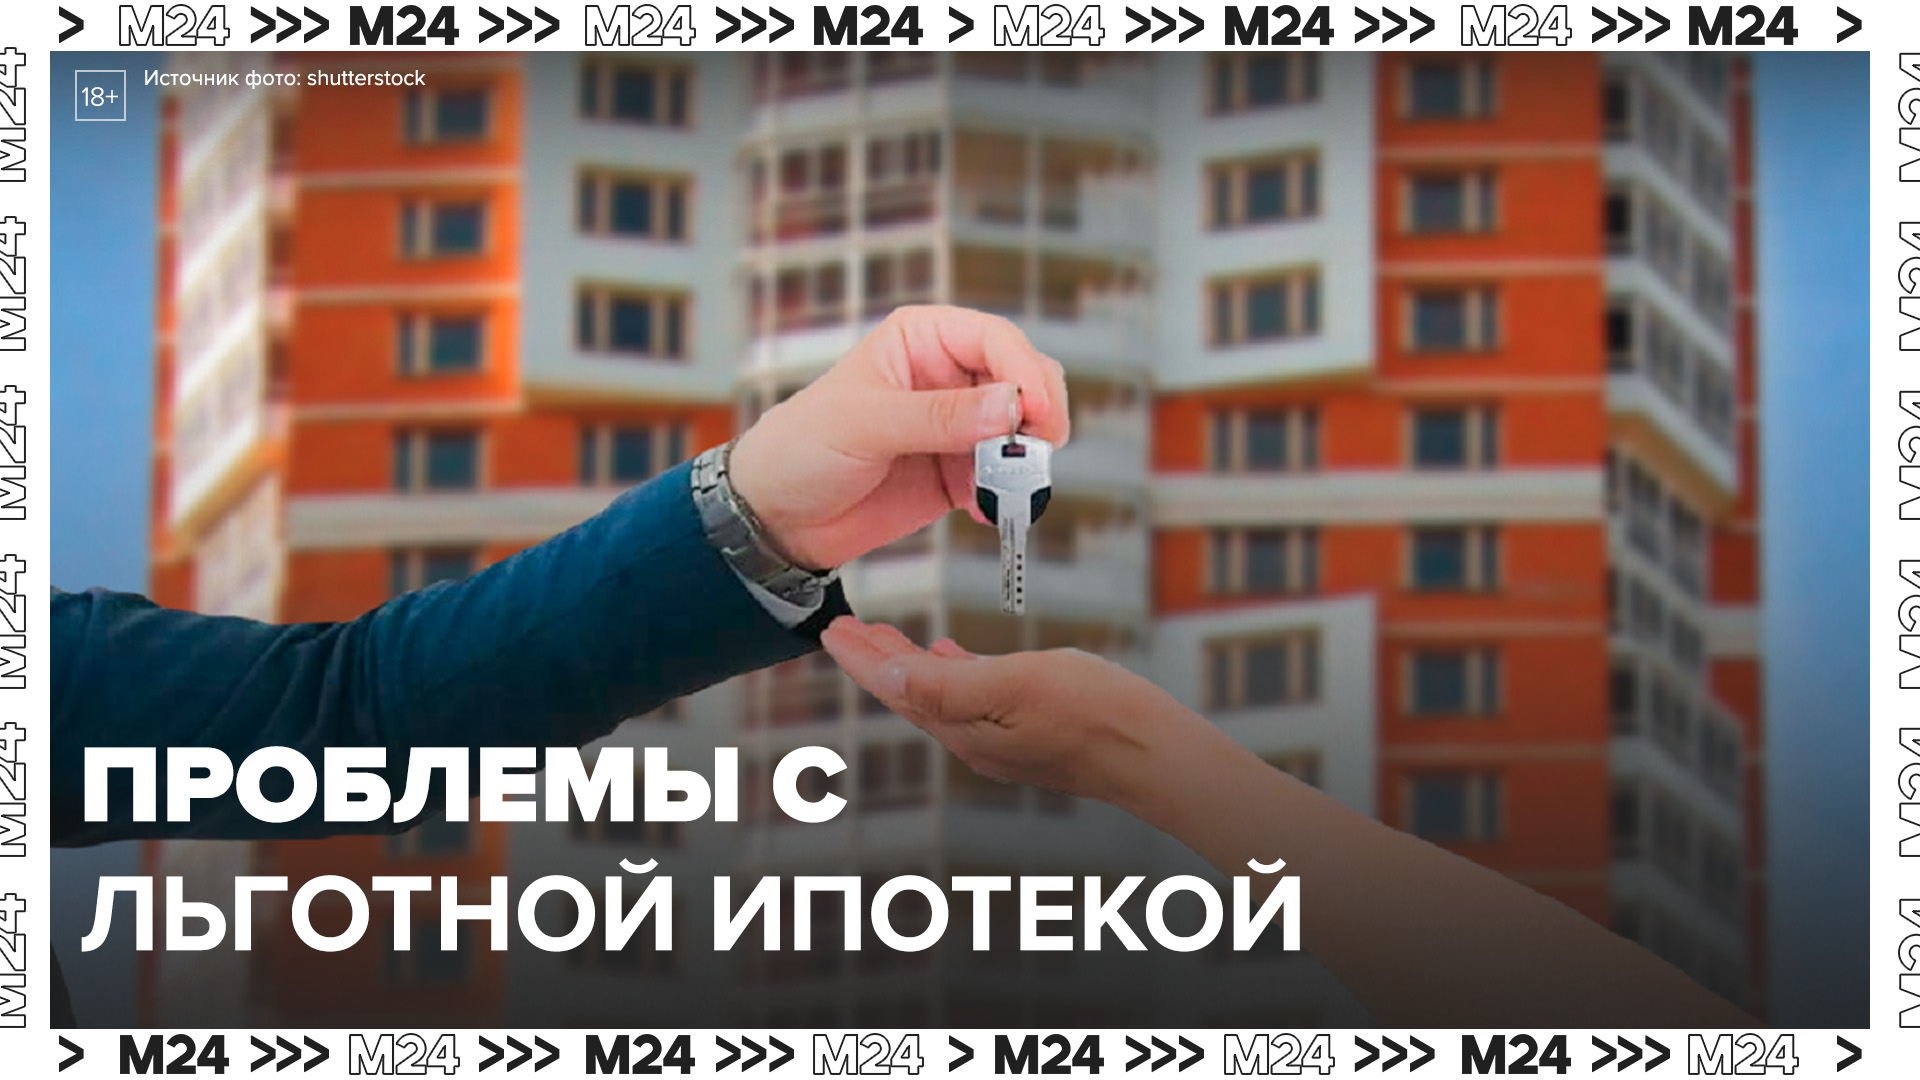 Купить квартиру ипотеку московский